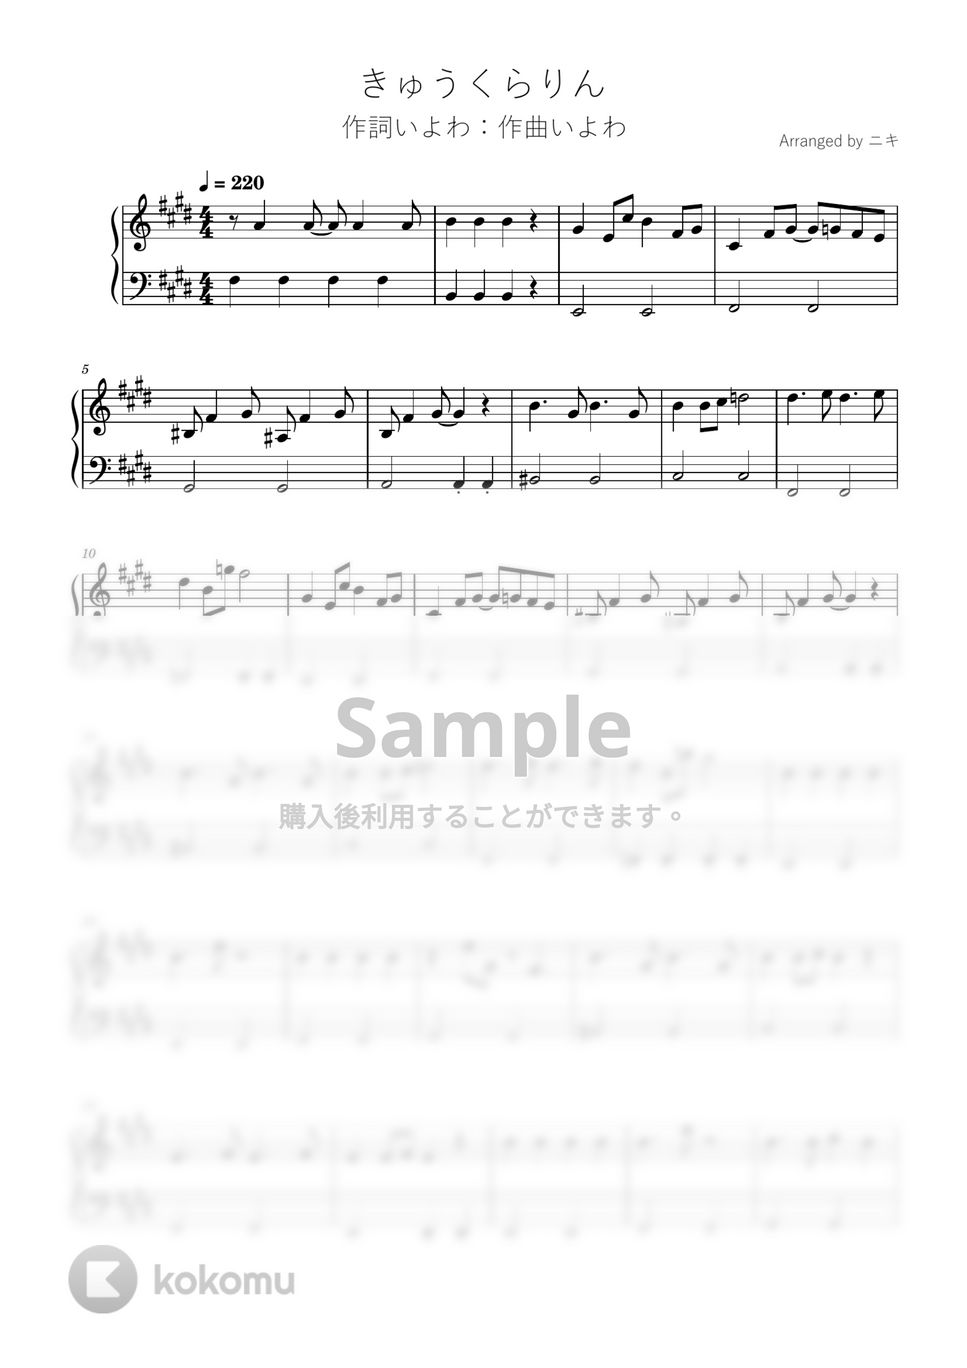 いよわ - きゅうくらりん (初級ピアノ / いよわ / きゅうくらりん / ボカロ) by 簡単ボカロピアノch ニキ